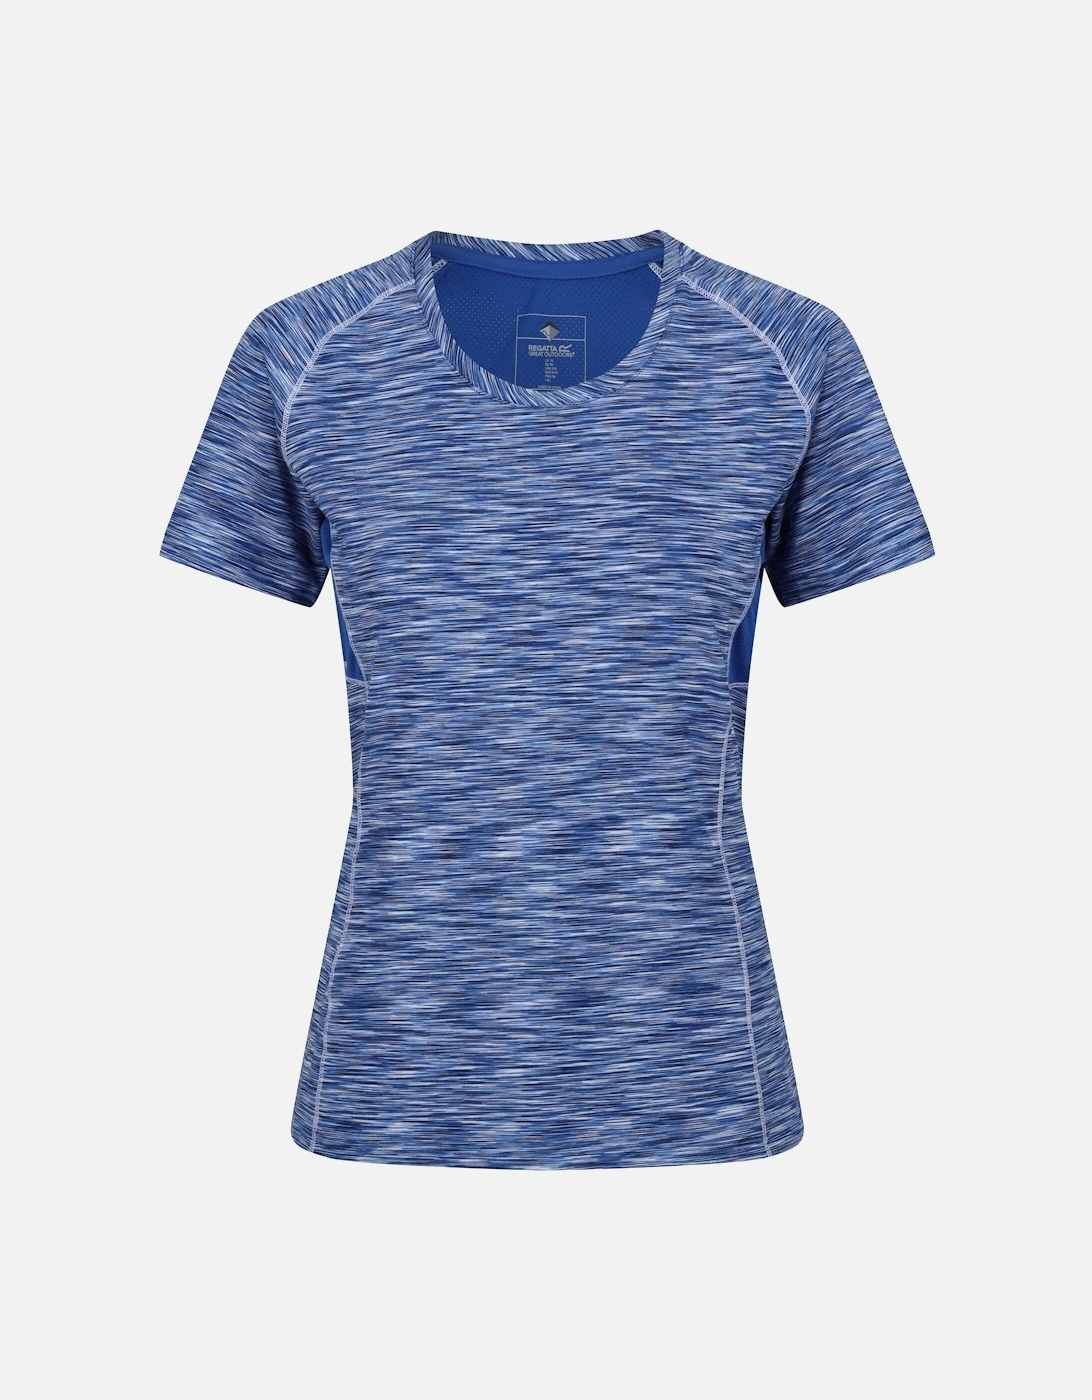 Womens/Ladies Laxley T-Shirt, 6 of 5